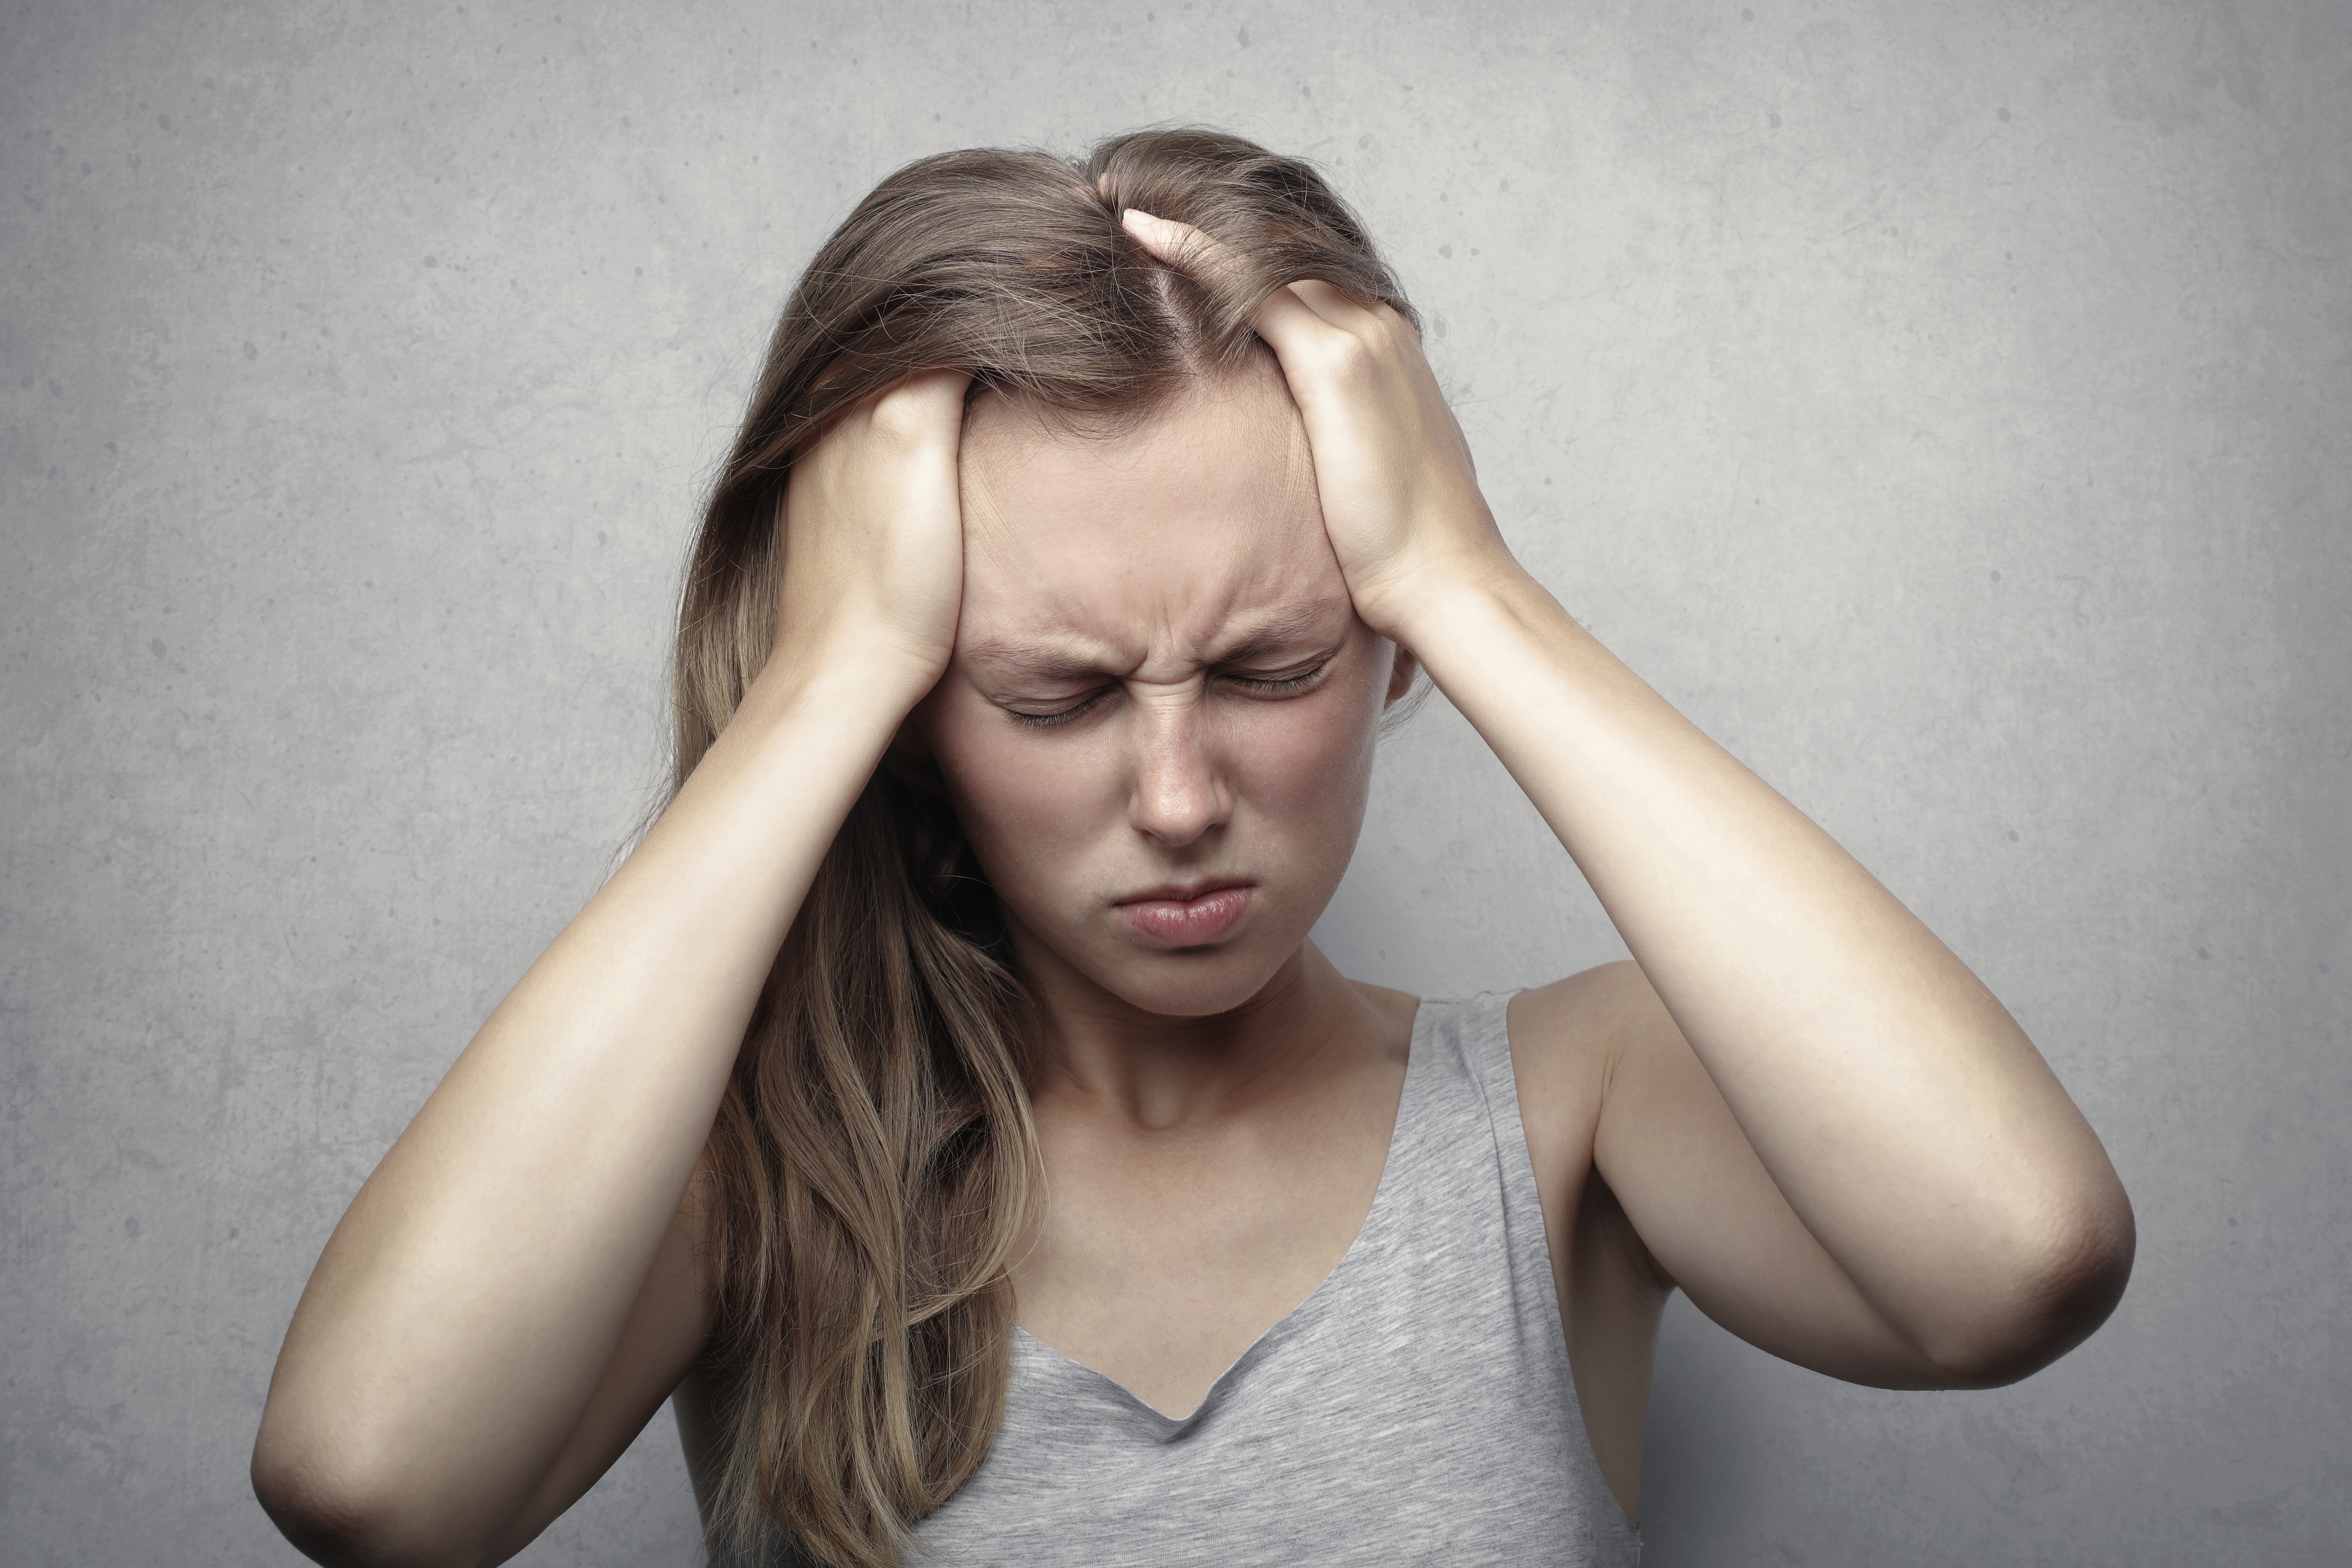 आयुर्वेद के अनुसार सिरदर्द और अनेक बीमारियों की वजह क्या है?..